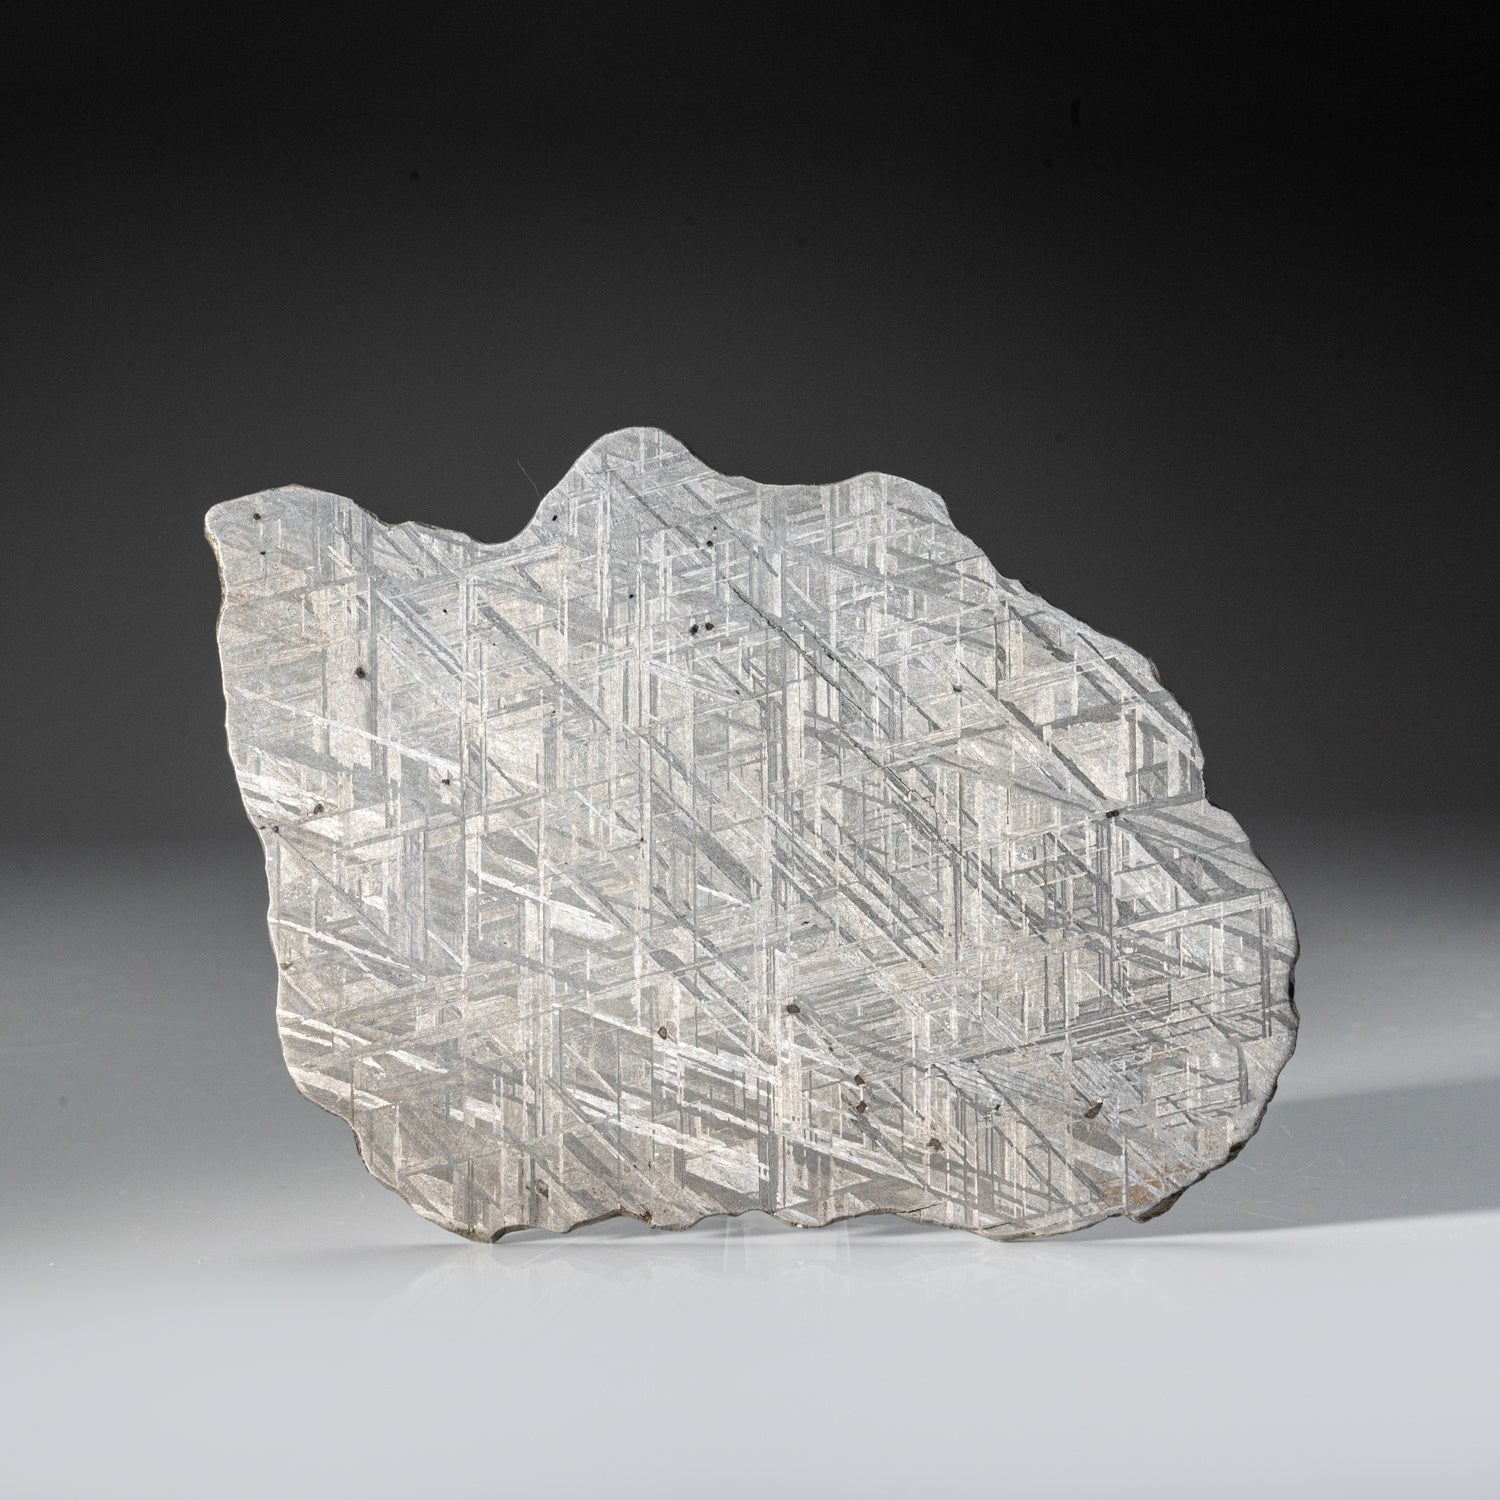 Genuine Muonionalusta Meteorite Slice (412.6 grams)